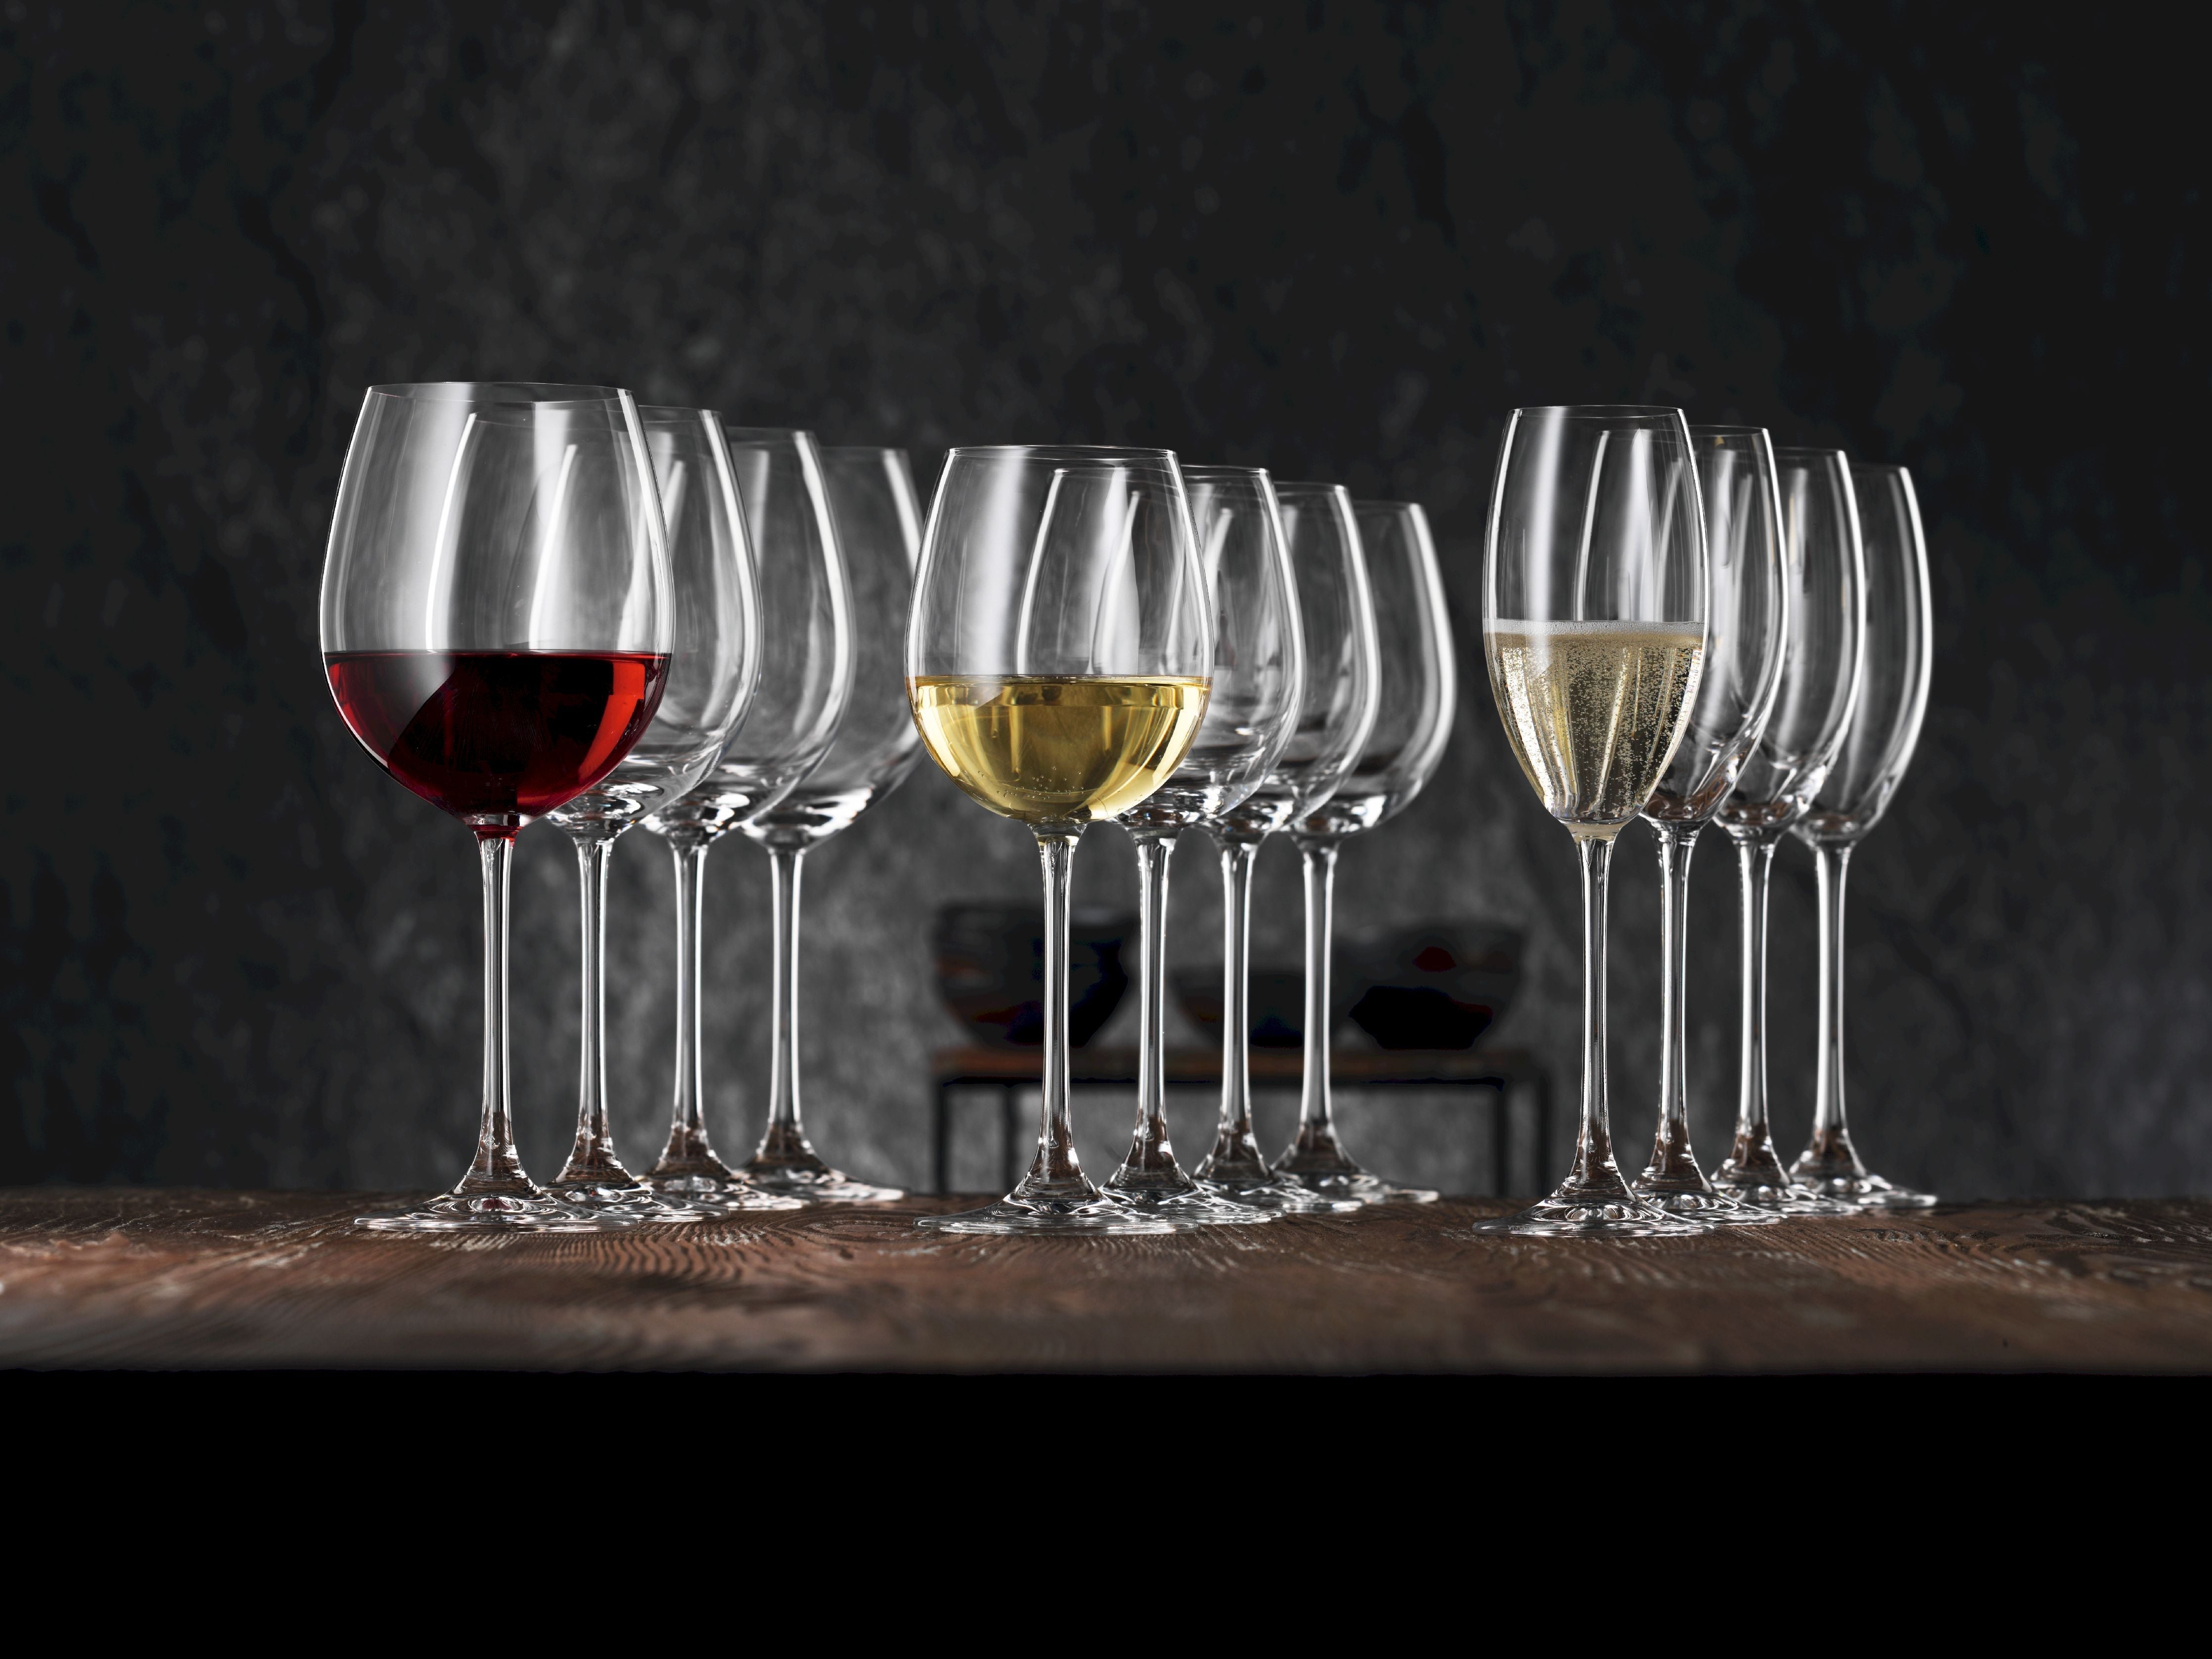 Nachtmann Vivendi Premium White Wine Goblet Wine Glass 387 ml, sett af 4